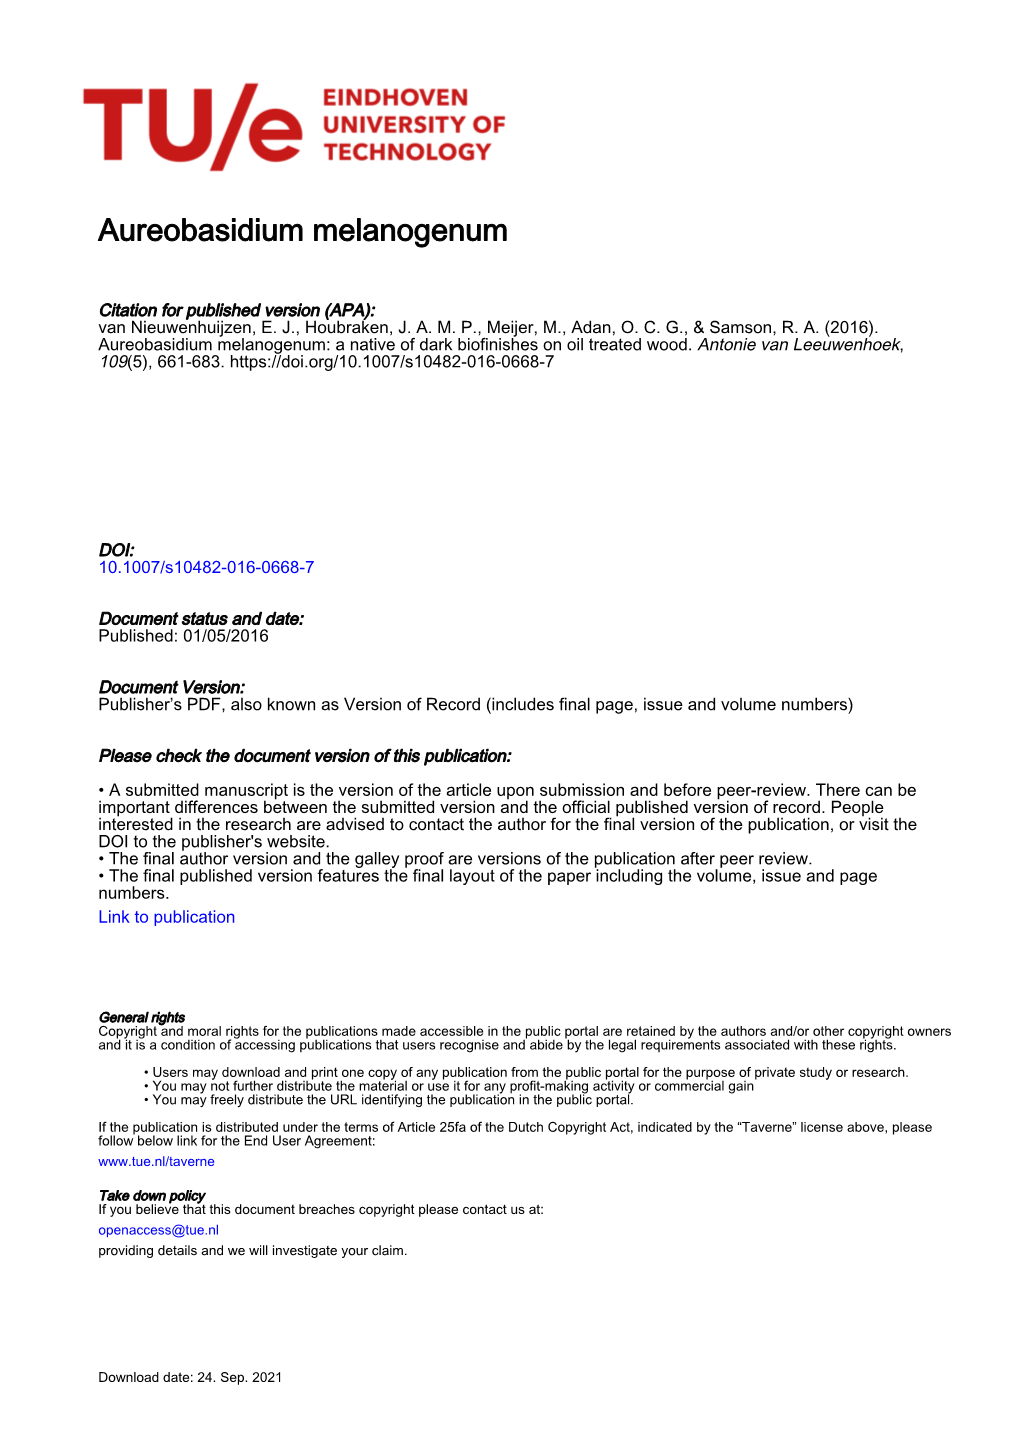 Aureobasidium Melanogenum